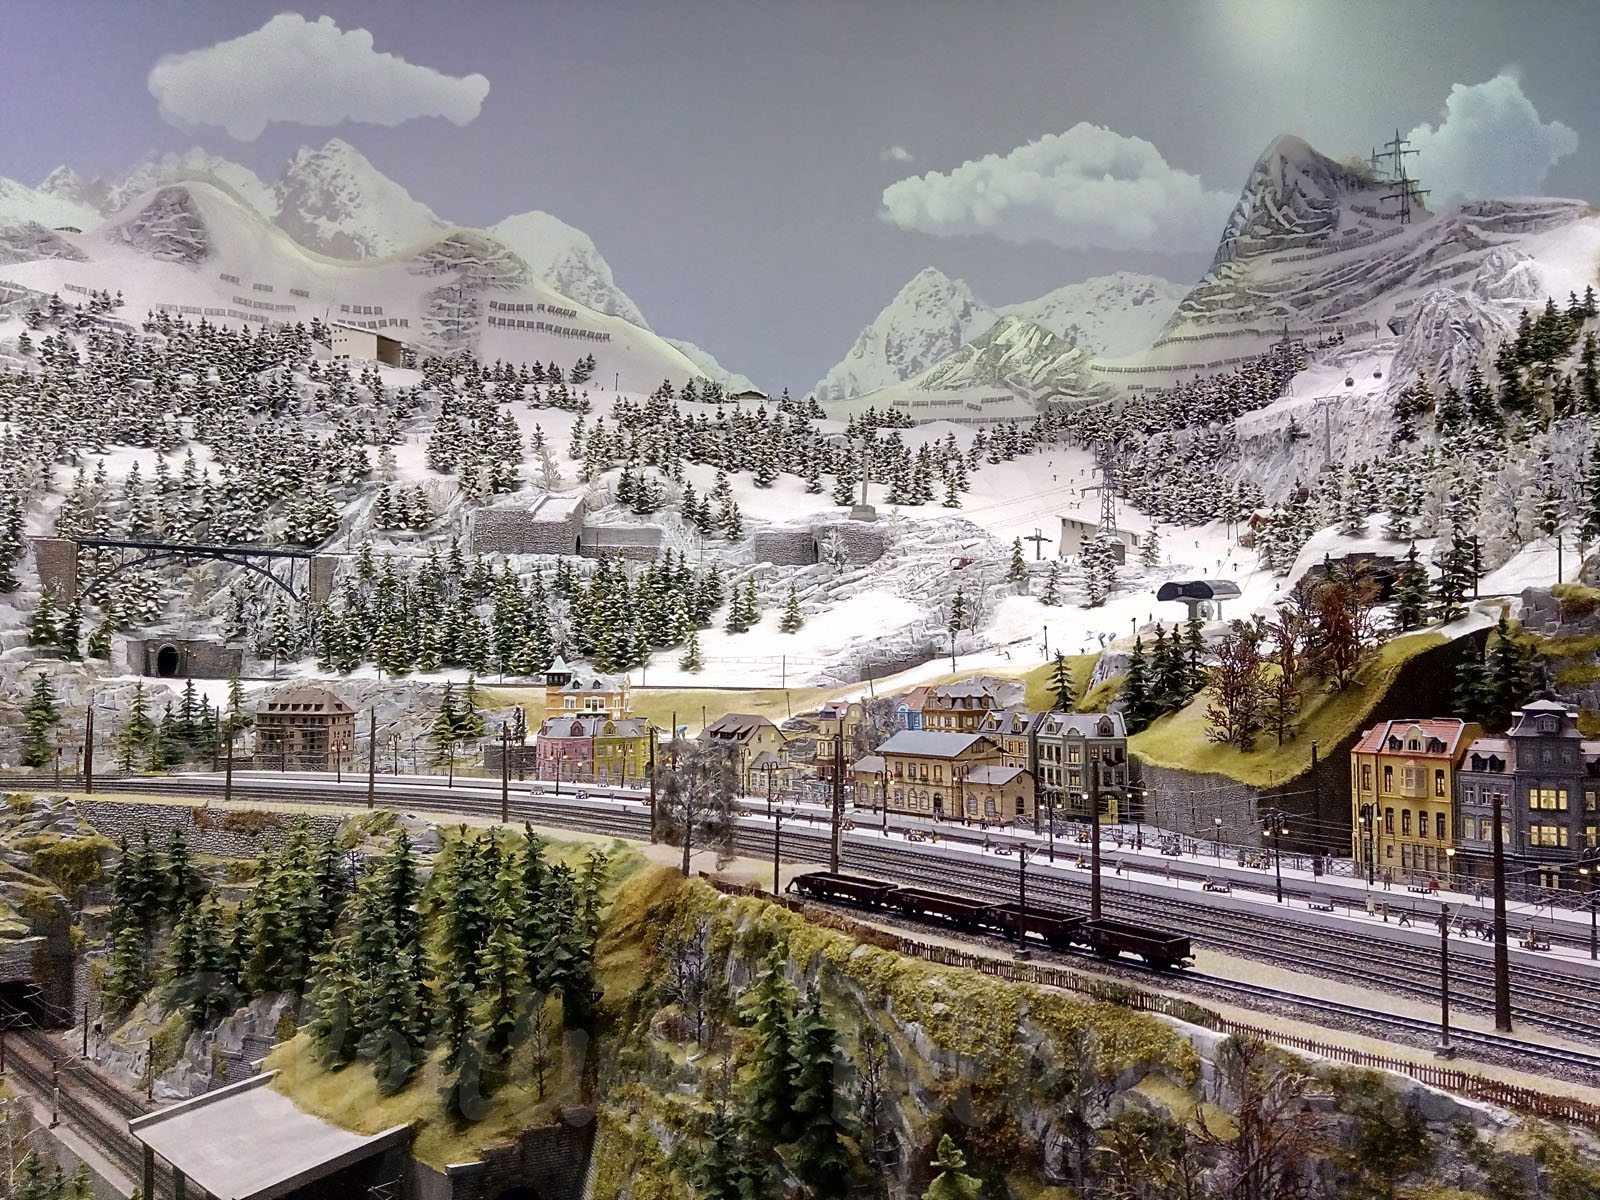 纪录片 2: Hans-Peter Porsche Traumwerk 火车玩具 HO軌 1/87 铁路 沙盤 火车模型